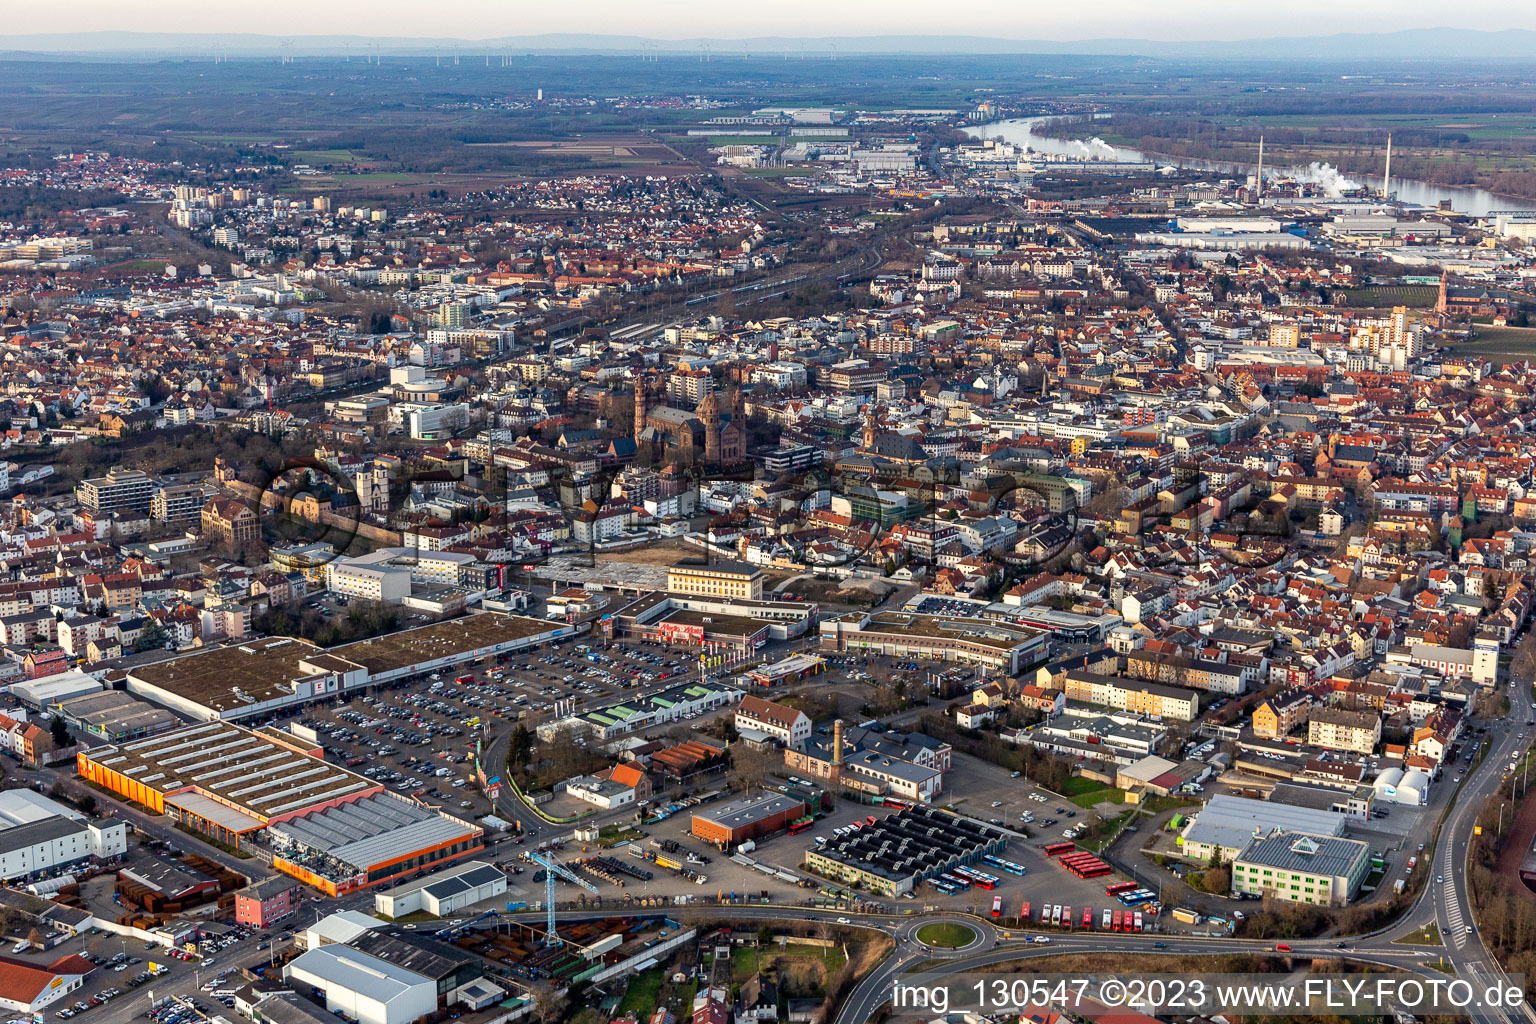 Luftbild von OBI in Worms im Bundesland Rheinland-Pfalz, Deutschland